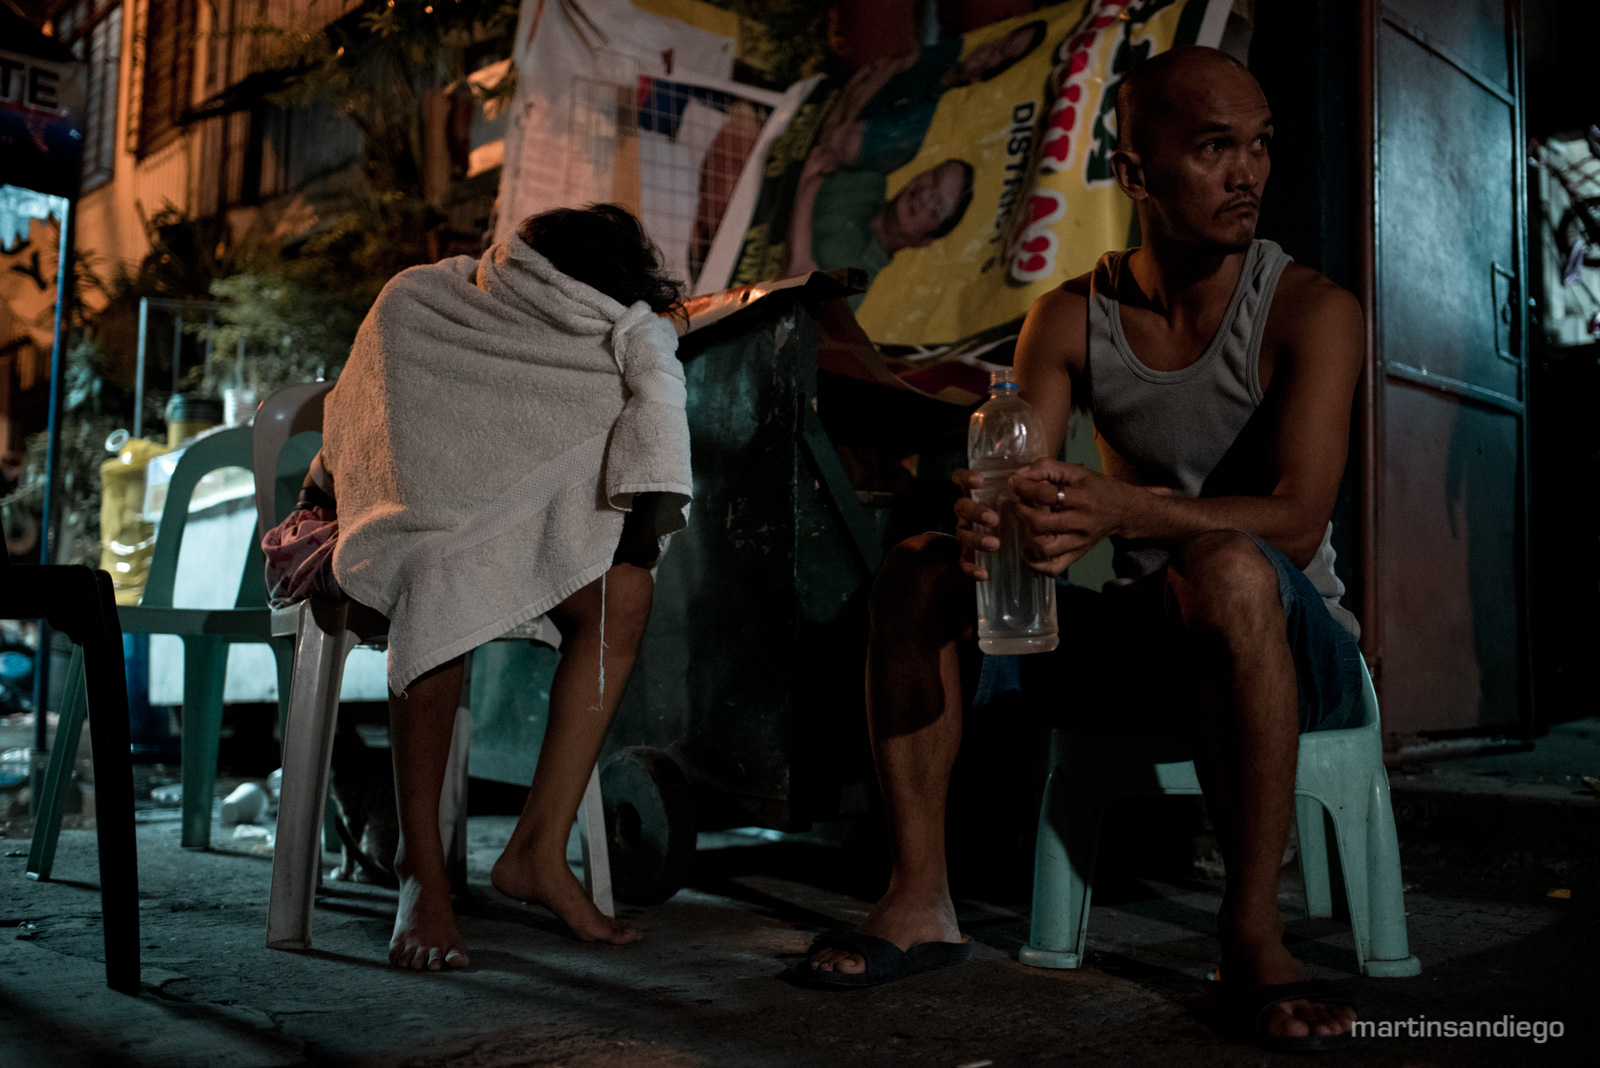 Philippines War on Drugs